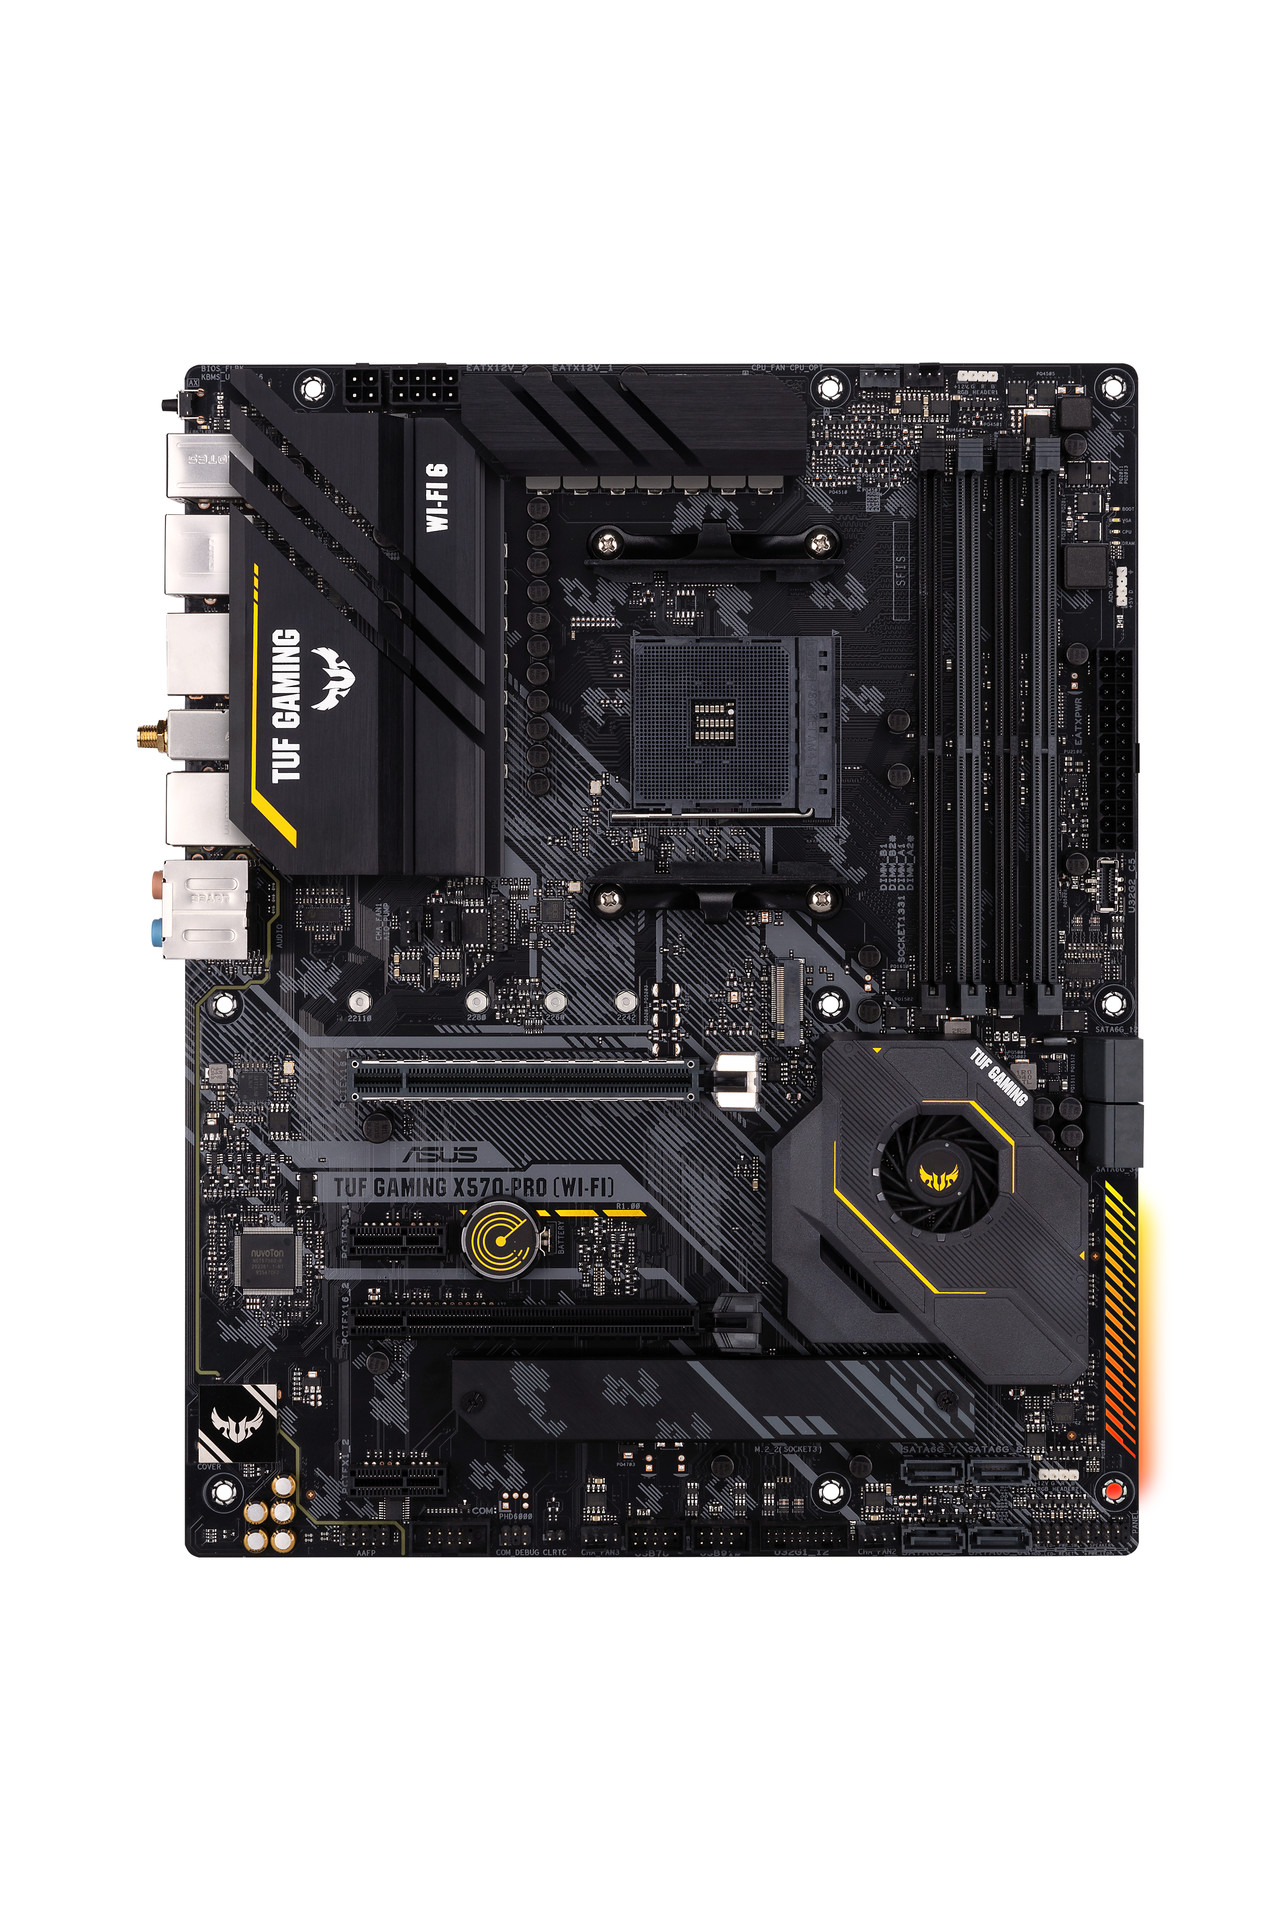 MB ASUS AMD X570 SKT AM4 TUF Gaming X570-Pro (Wi-Fi) ATX